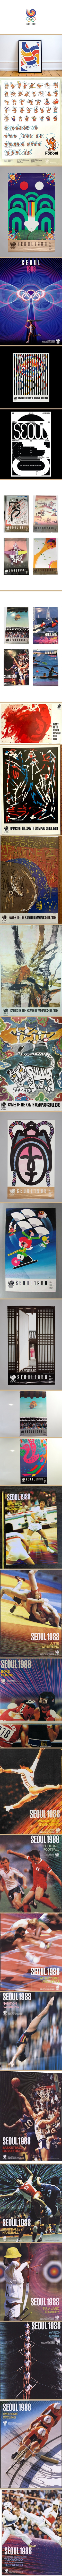 서울 올림픽 포스터.jpg 35년전 88 서울 올림픽 포스터들...JPG